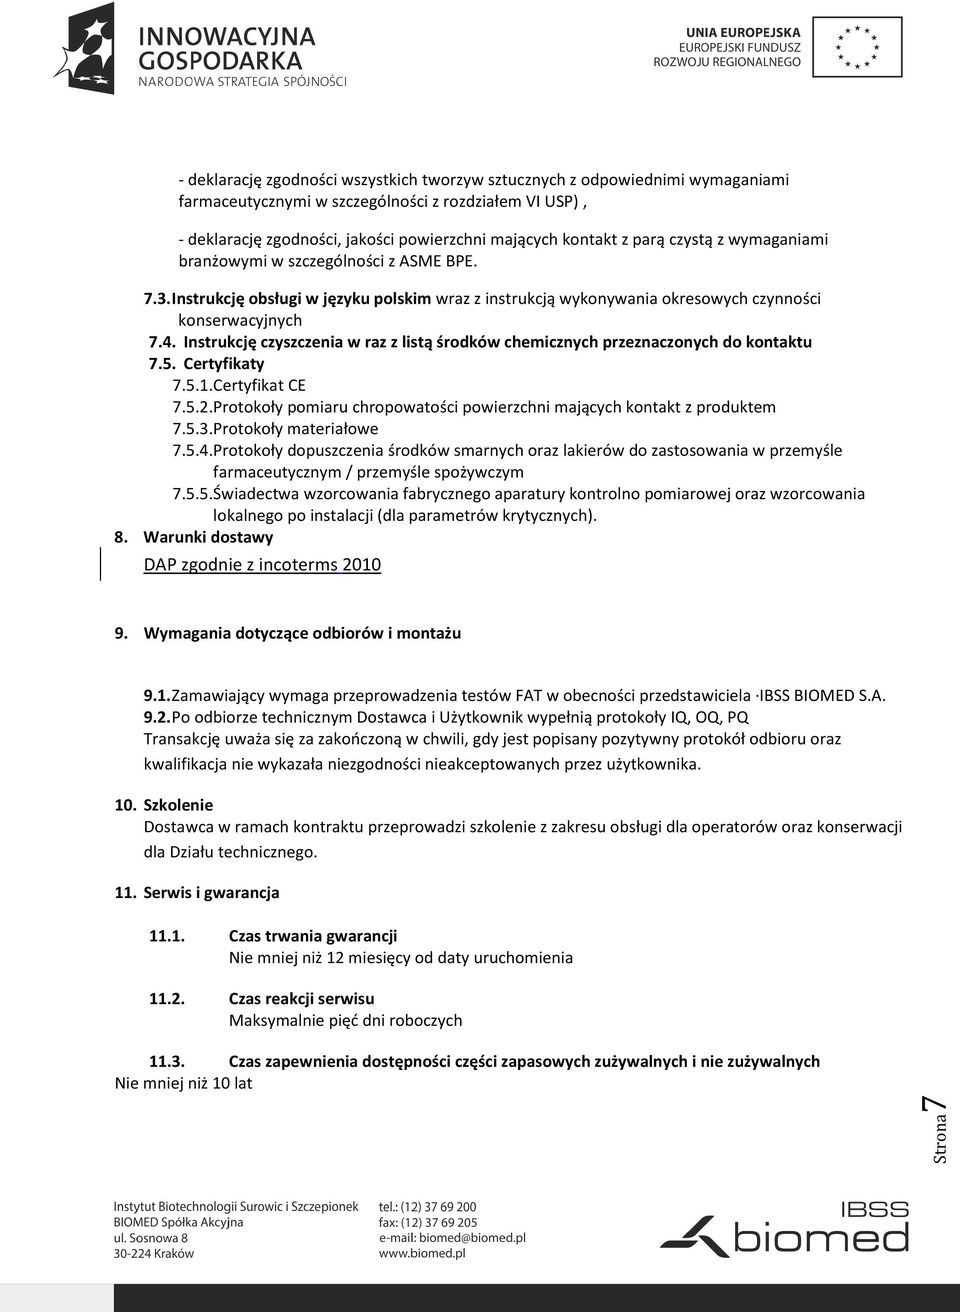 Instrukcję czyszczenia w raz z listą środków chemicznych przeznaczonych do kontaktu 7.5. Certyfikaty 7.5.1. Certyfikat CE 7.5.2.